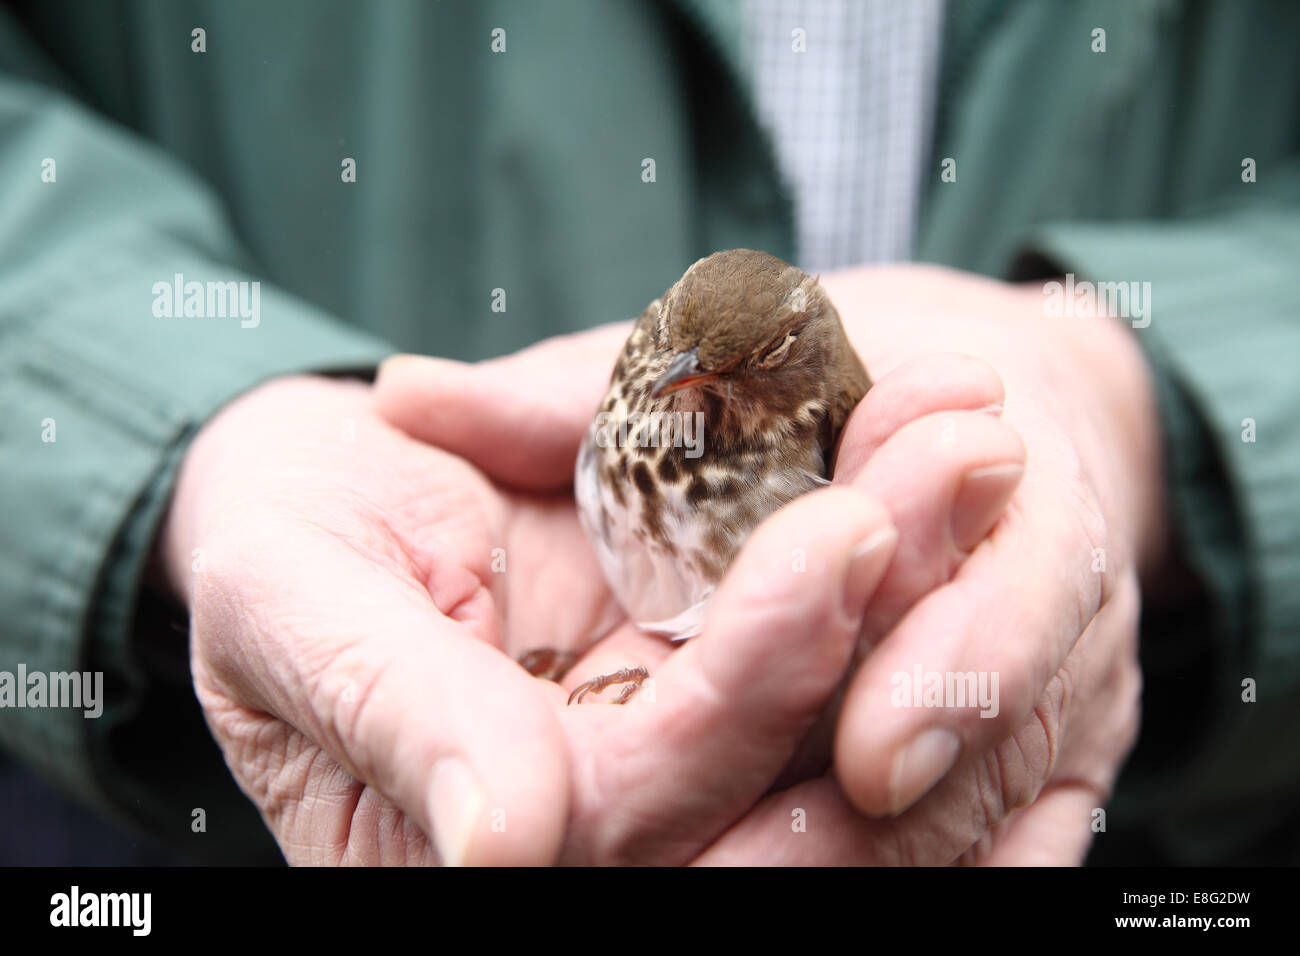 Rescatados, aturdido pájaro que voló hacia una ventana en manos del hombre Foto de stock